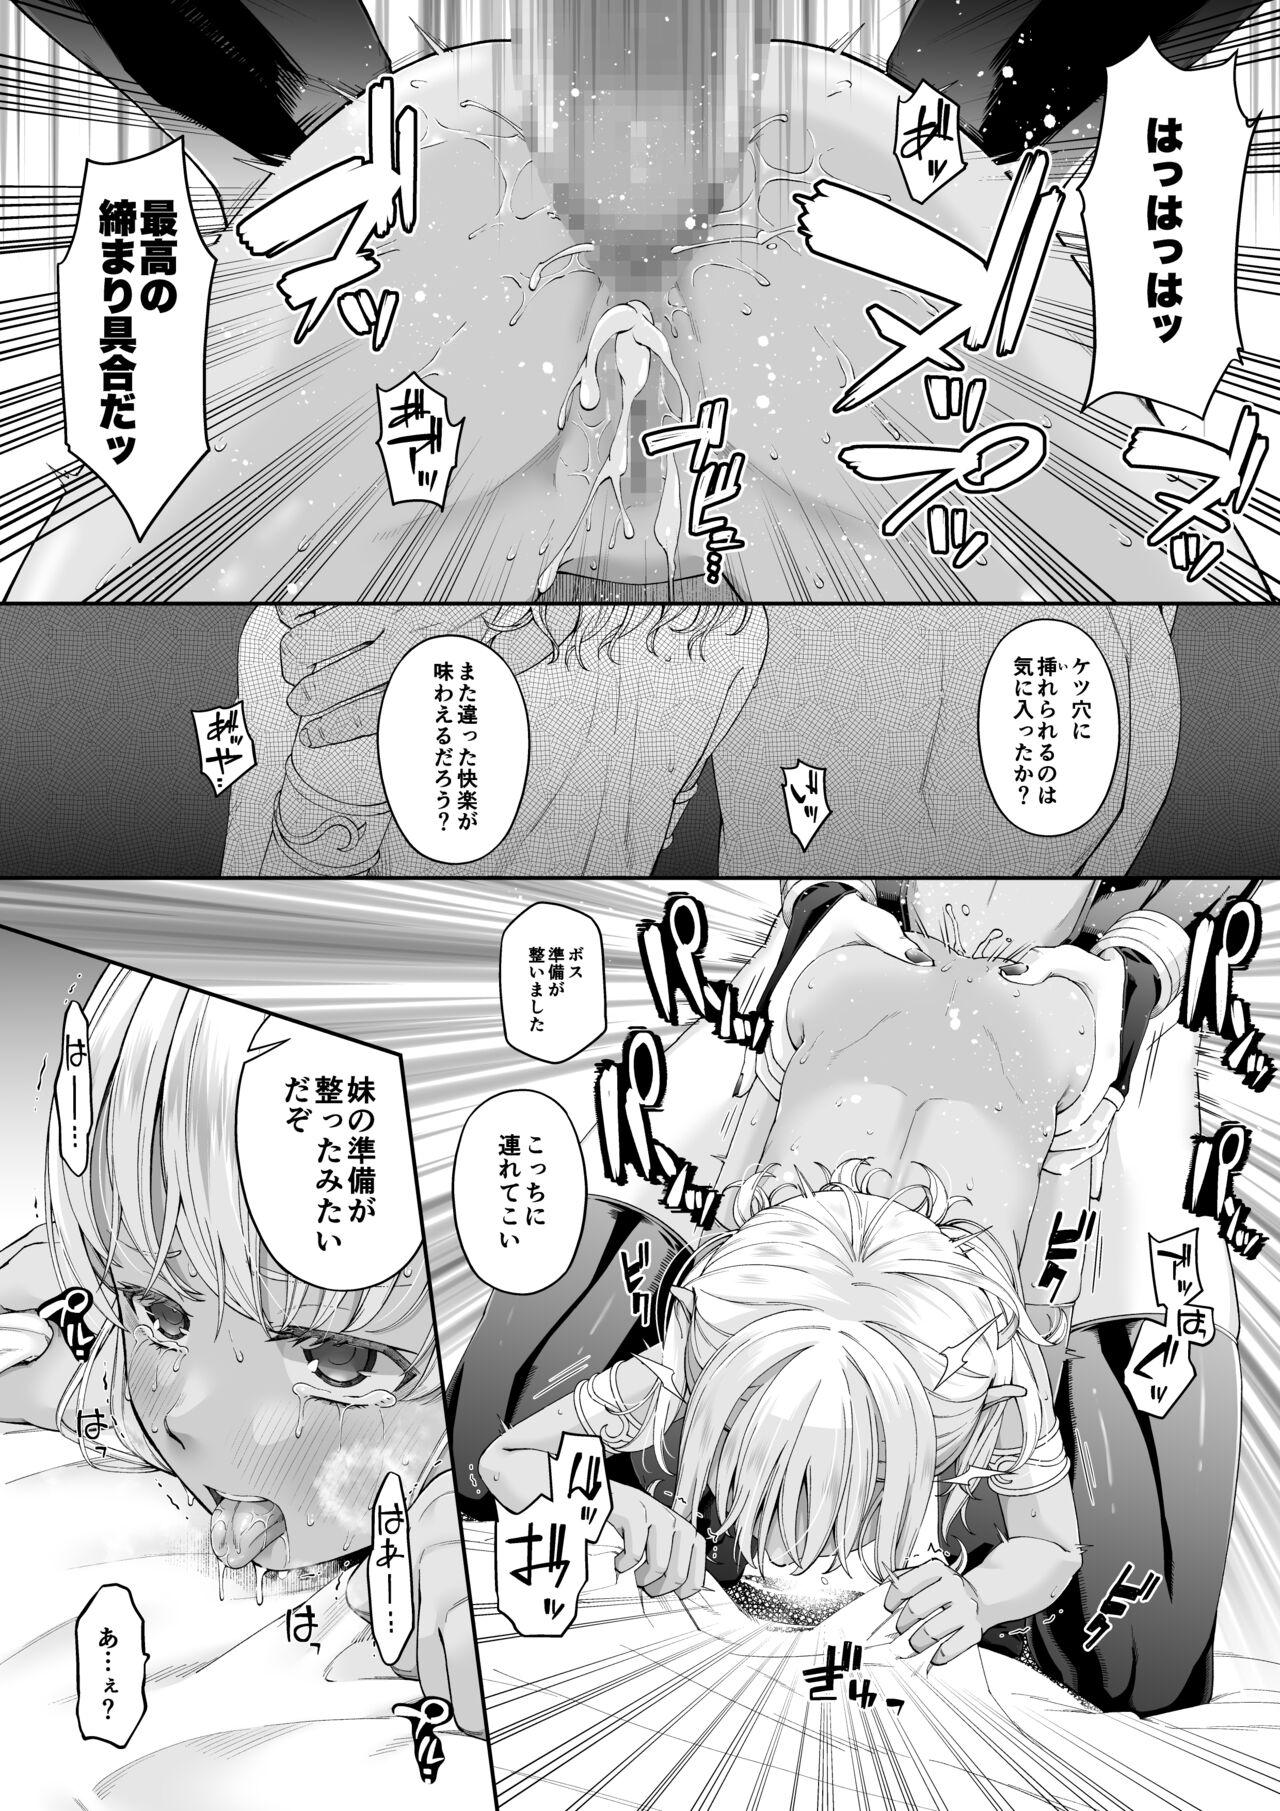 Adult [DASHIMAKITAMAGO] Kakedashi Boukensha no Matsuro 4 [Ningen no ura shakai] Bōken-sha ni akogareta Erufu shimai - 2 - Original Pica - Page 8